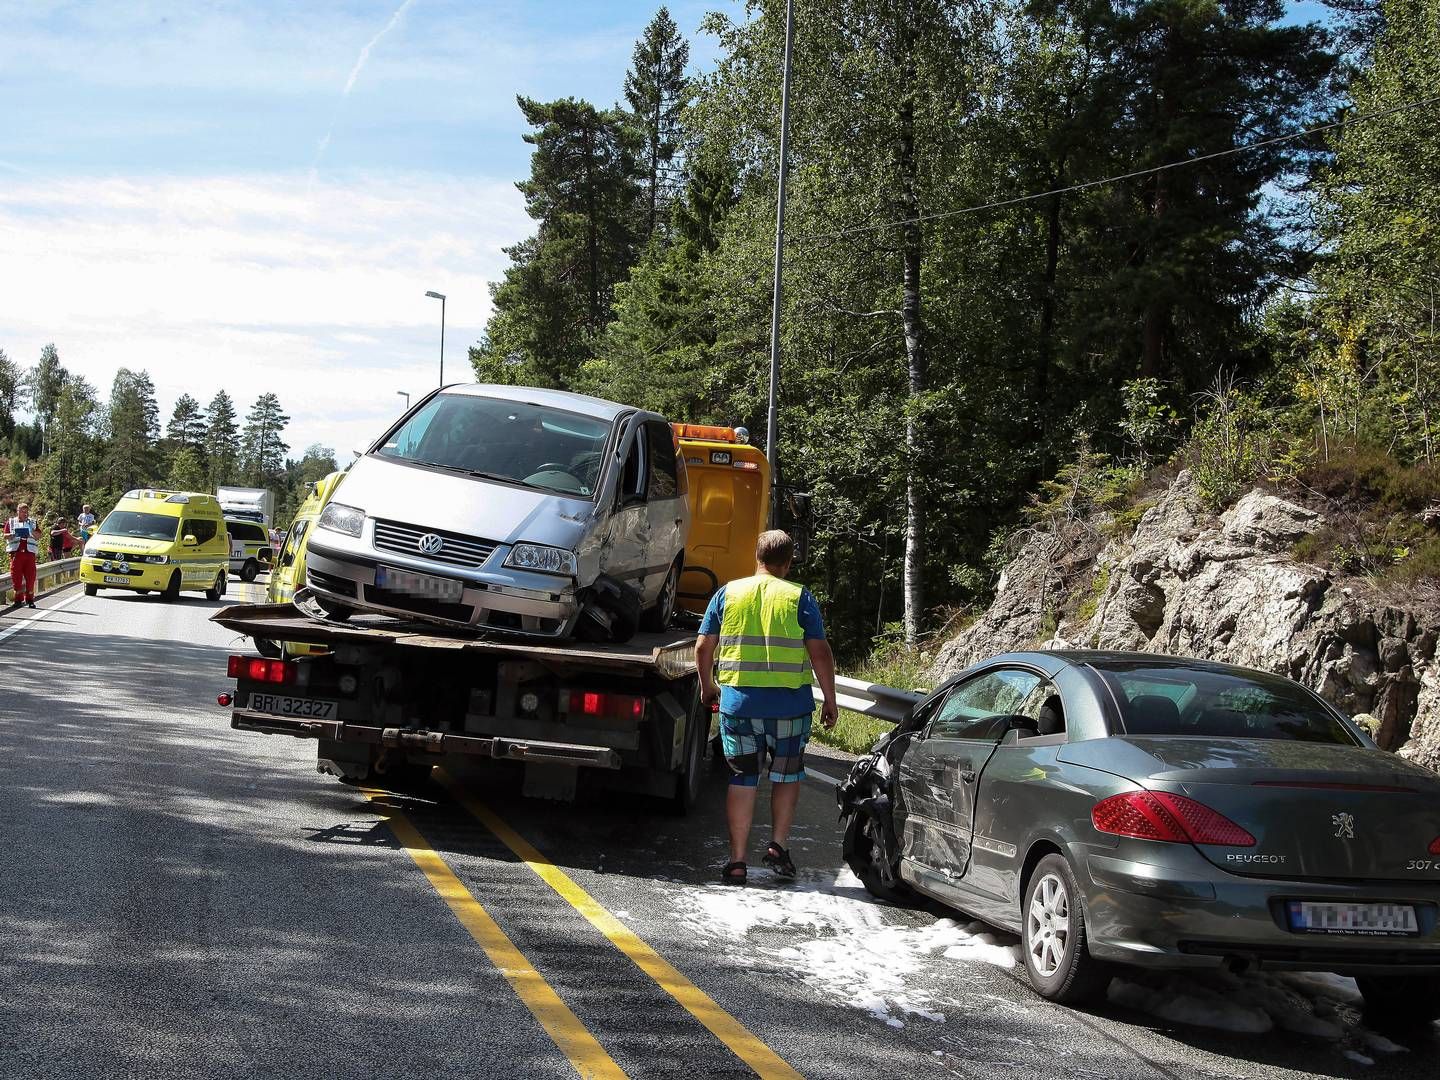 ØKTE ERSTATNINGER: Illustrasjonsbilde. Norske biler er oftere involvert i ulykker og andre forsikringshendelser enn før. I år kan samlede erstatningsutbetalinger overstige 20 milliarder kroner. | Foto: Thorvald Knudsen / NTB